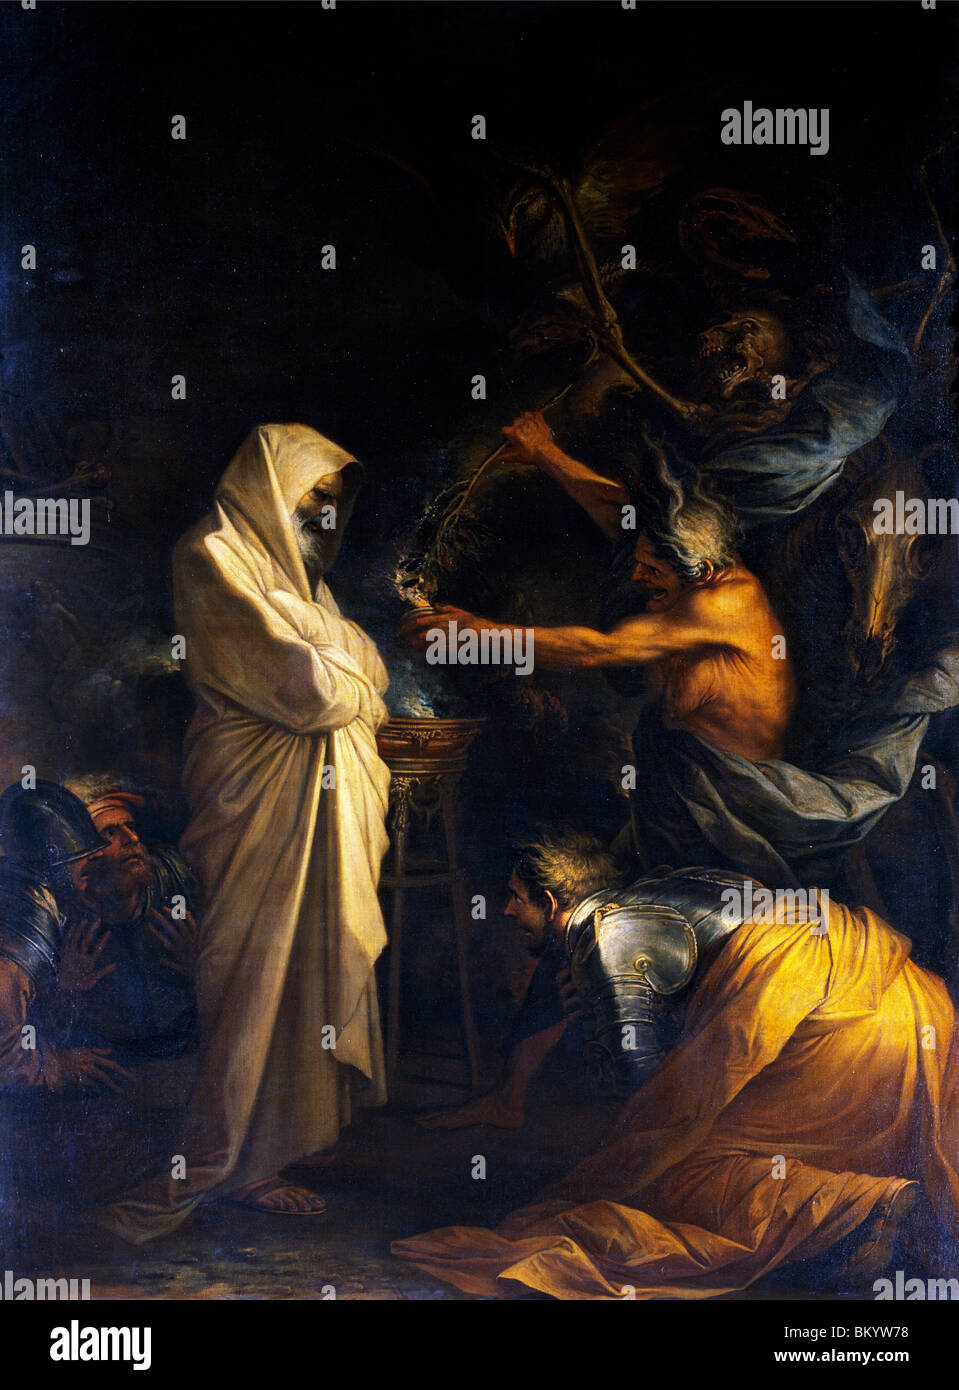 Fantasma de Samuel llamó delante de Saúl por la bruja de Endor por Salvator Rosa, (1615-1673), París, Musée du Louvre Foto de stock